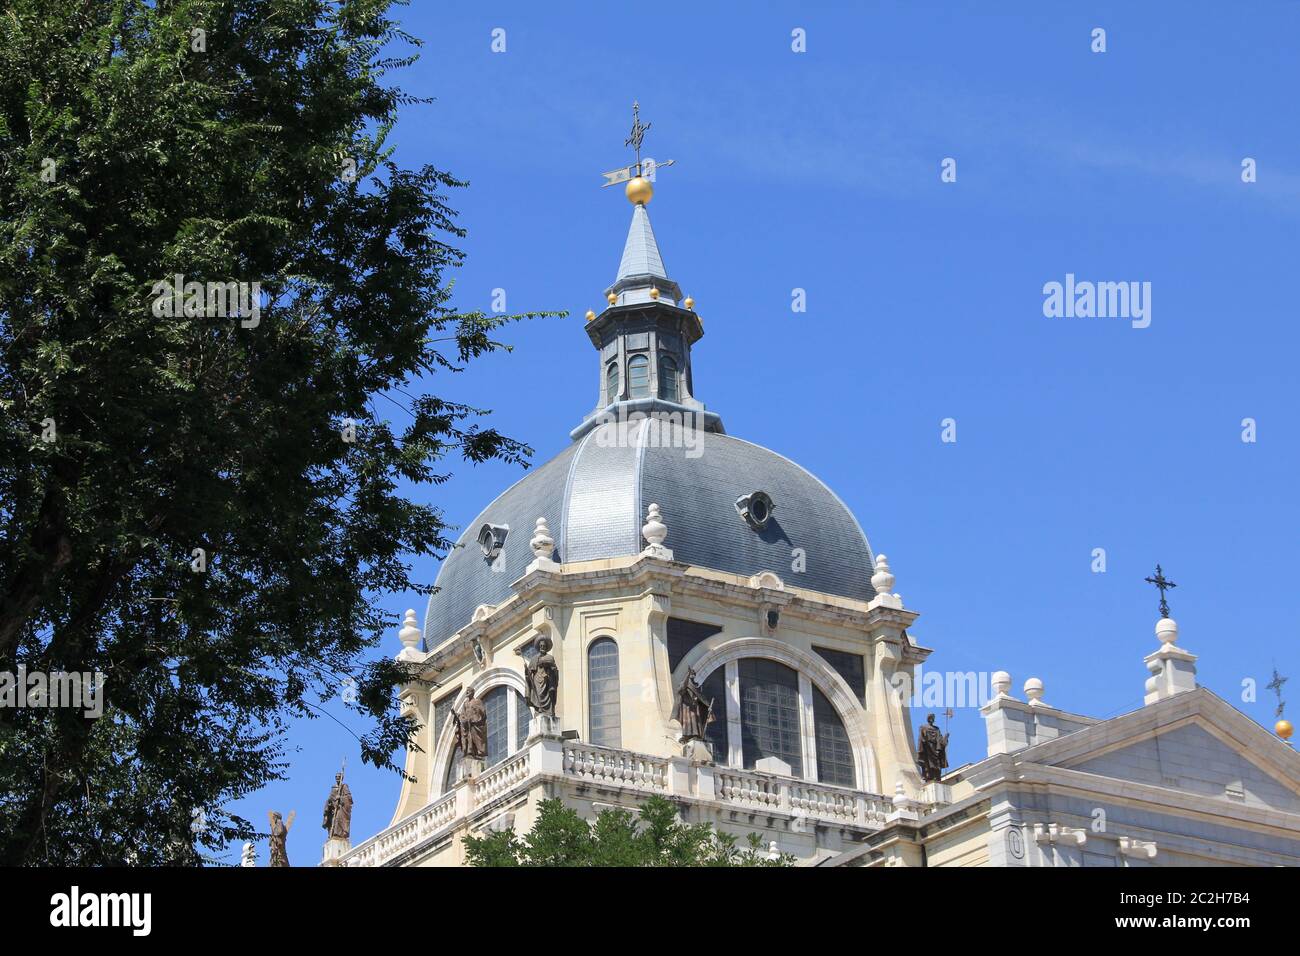 La cathédrale d'Almudena à Madrid, Espagne Banque D'Images